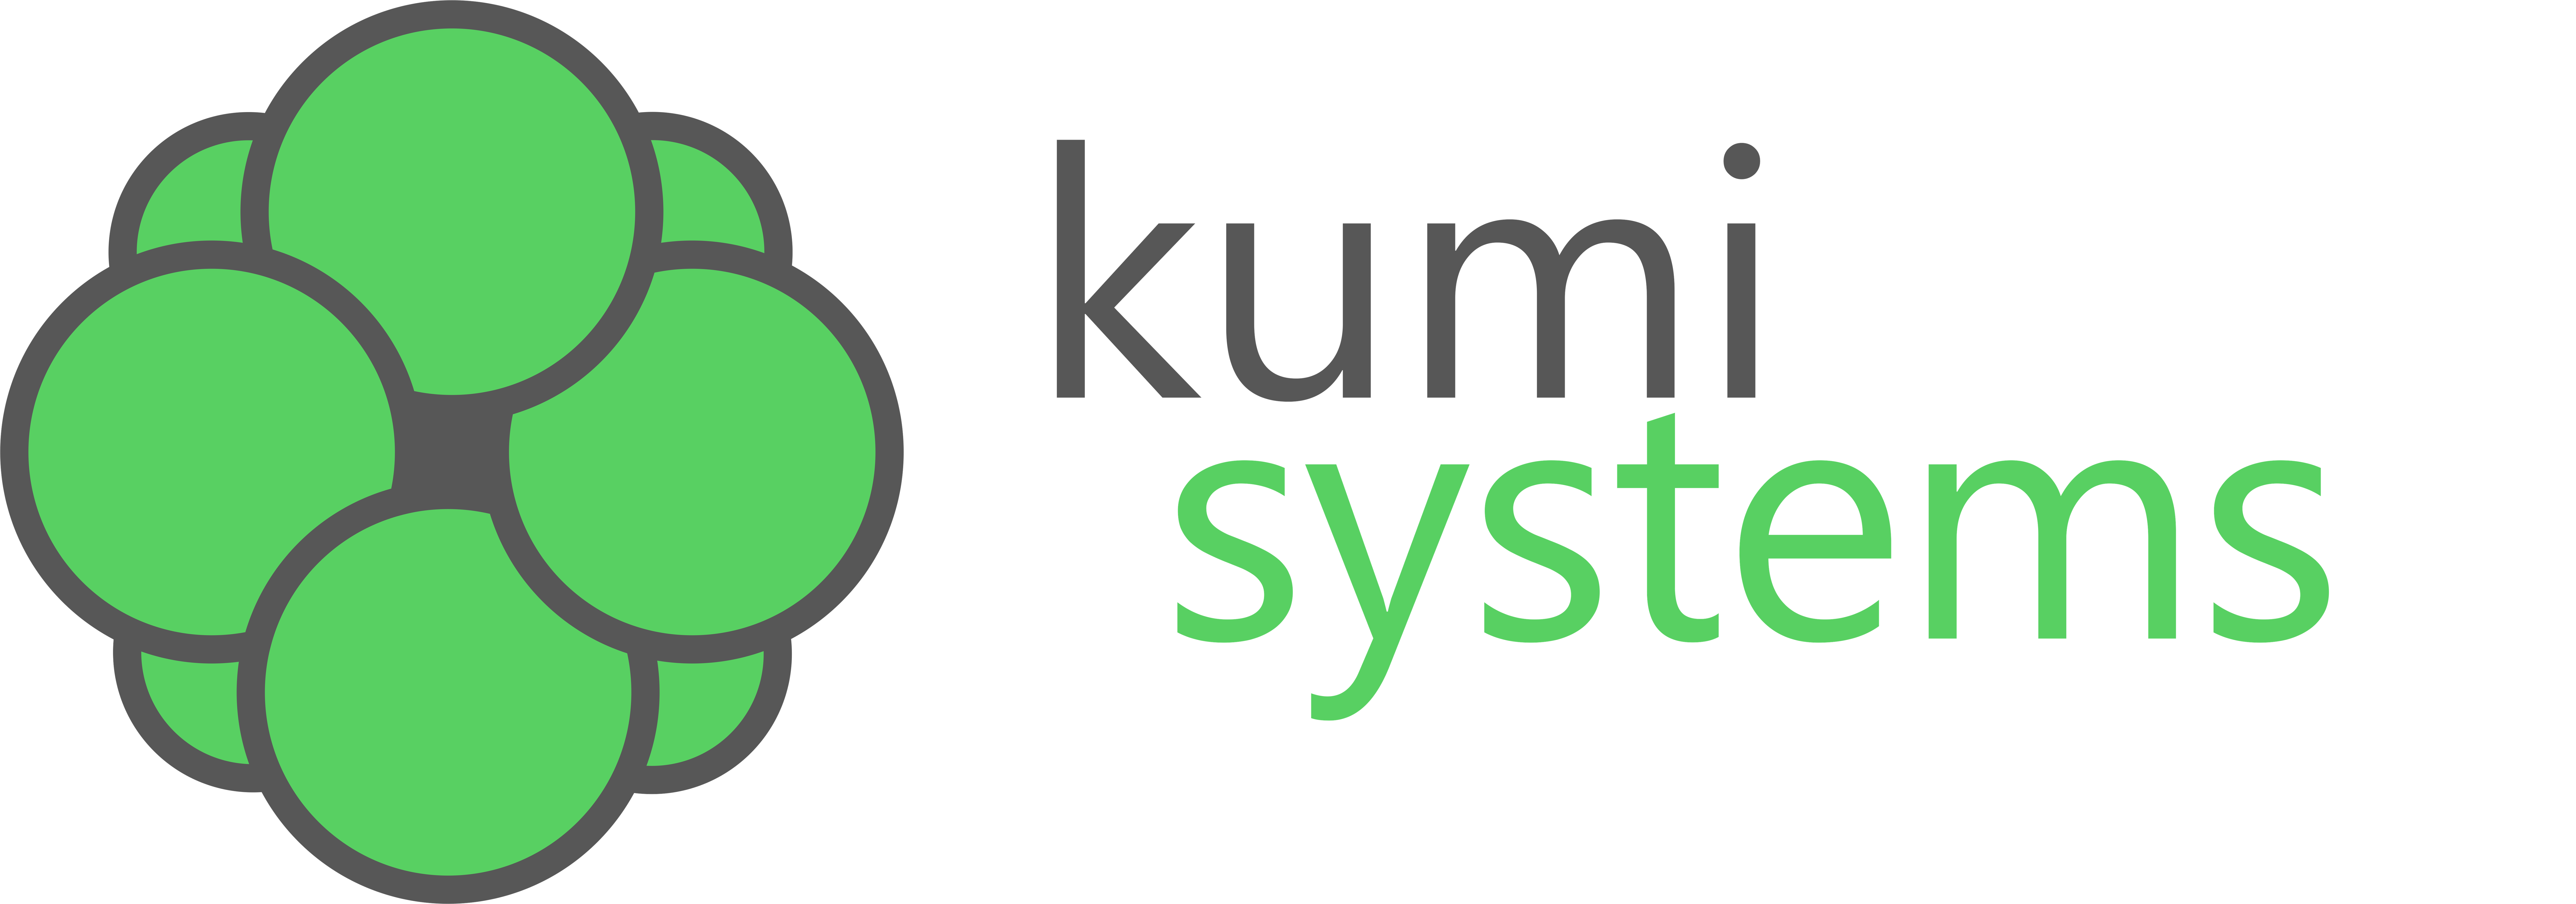 Kumi Systems